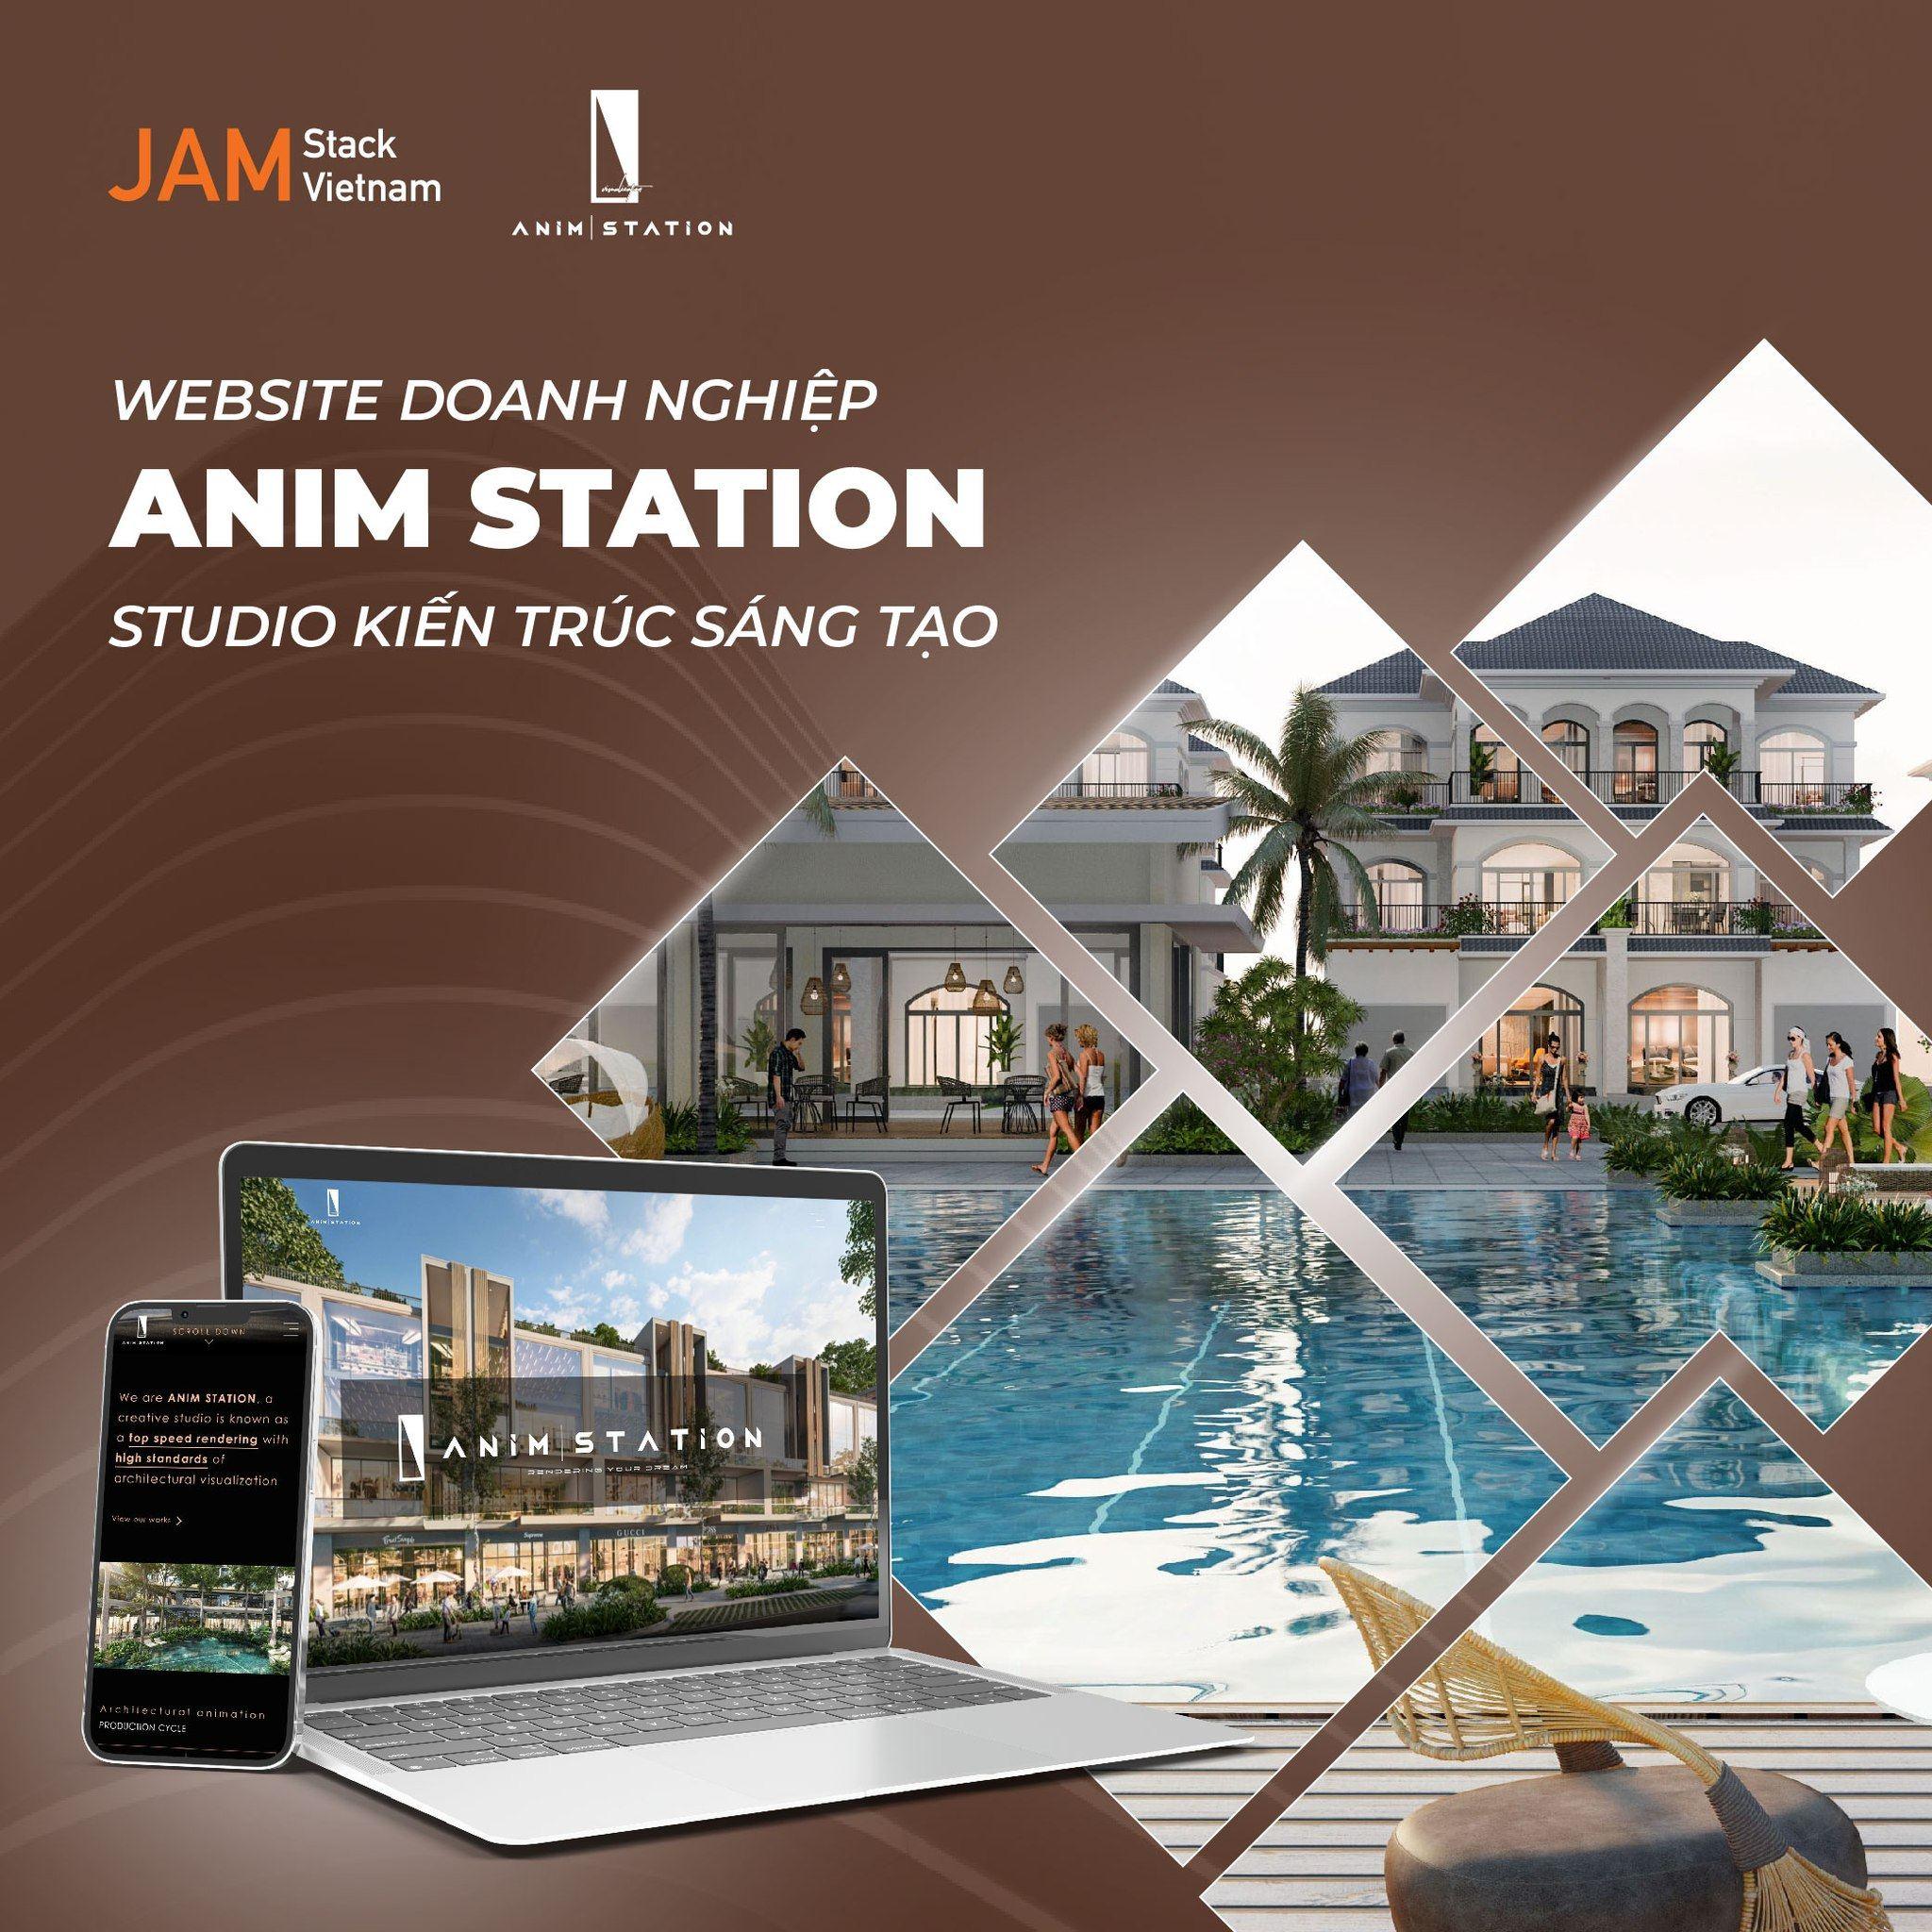 Cùng JAMstack Vietnam thiết kế giao diện website chuyên nghiệp